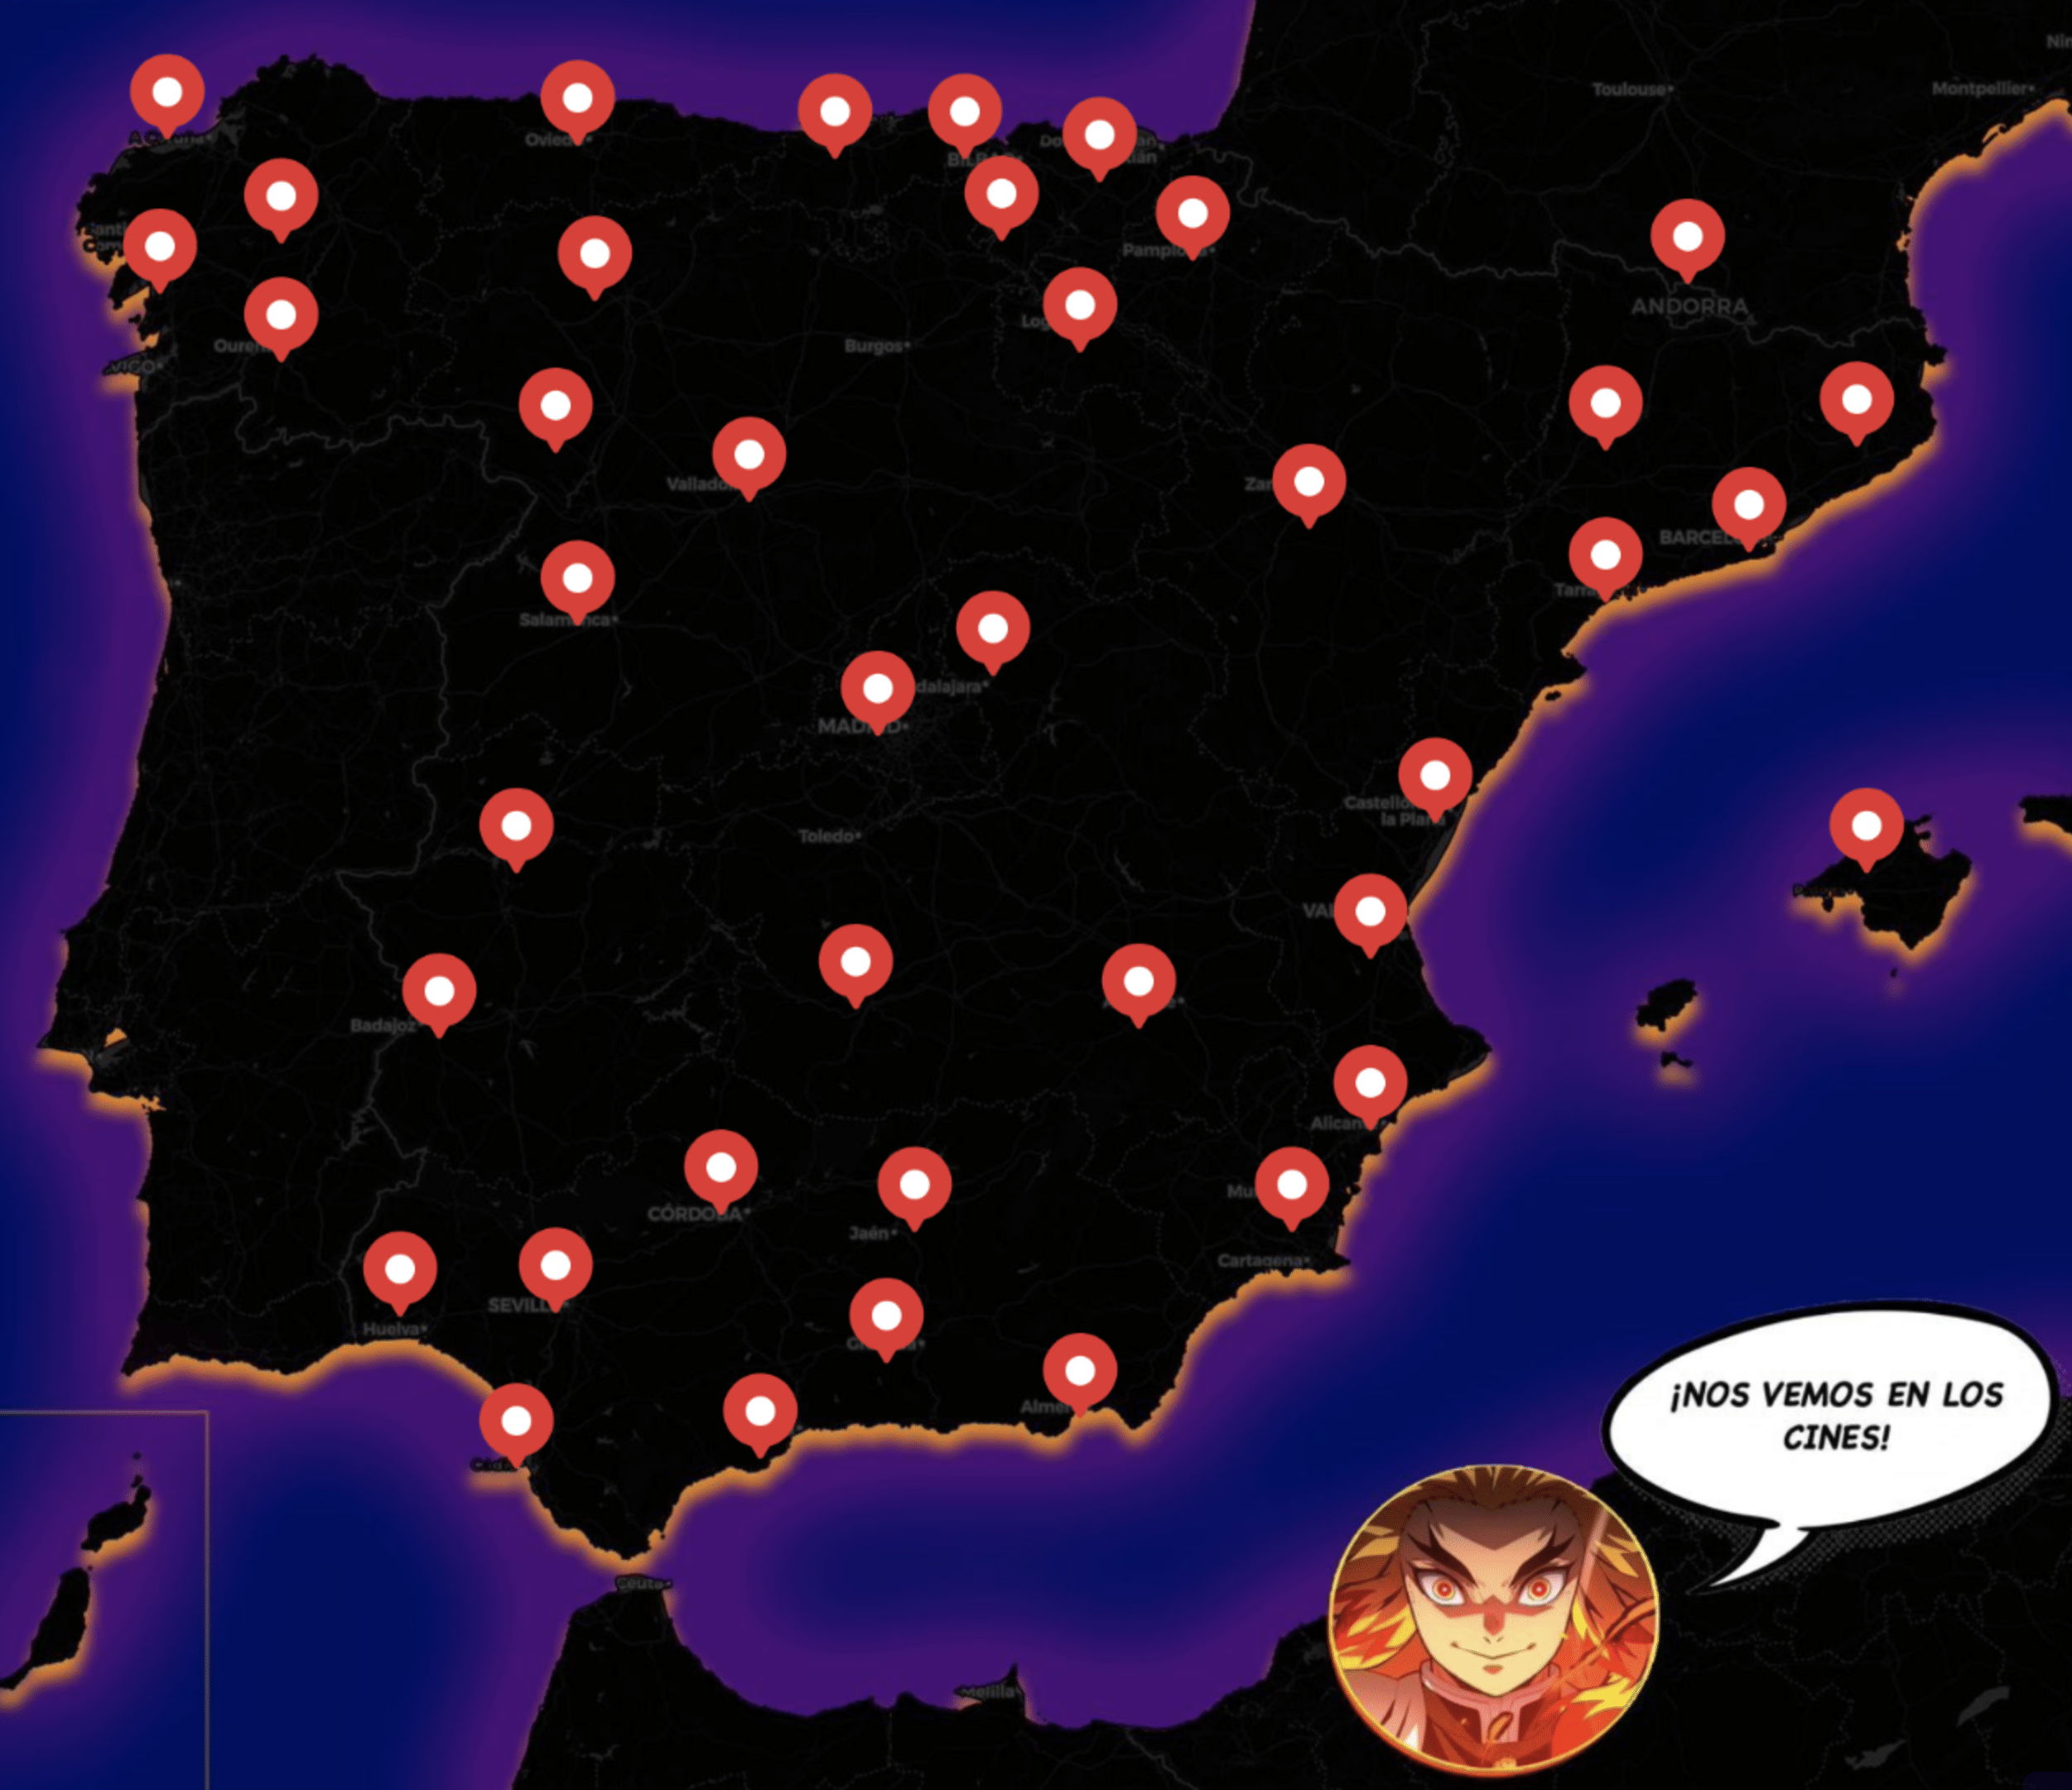 Guardianes de la noche se estrena en más de 200 cines de toda España, ¡Encuentra el tuyo!